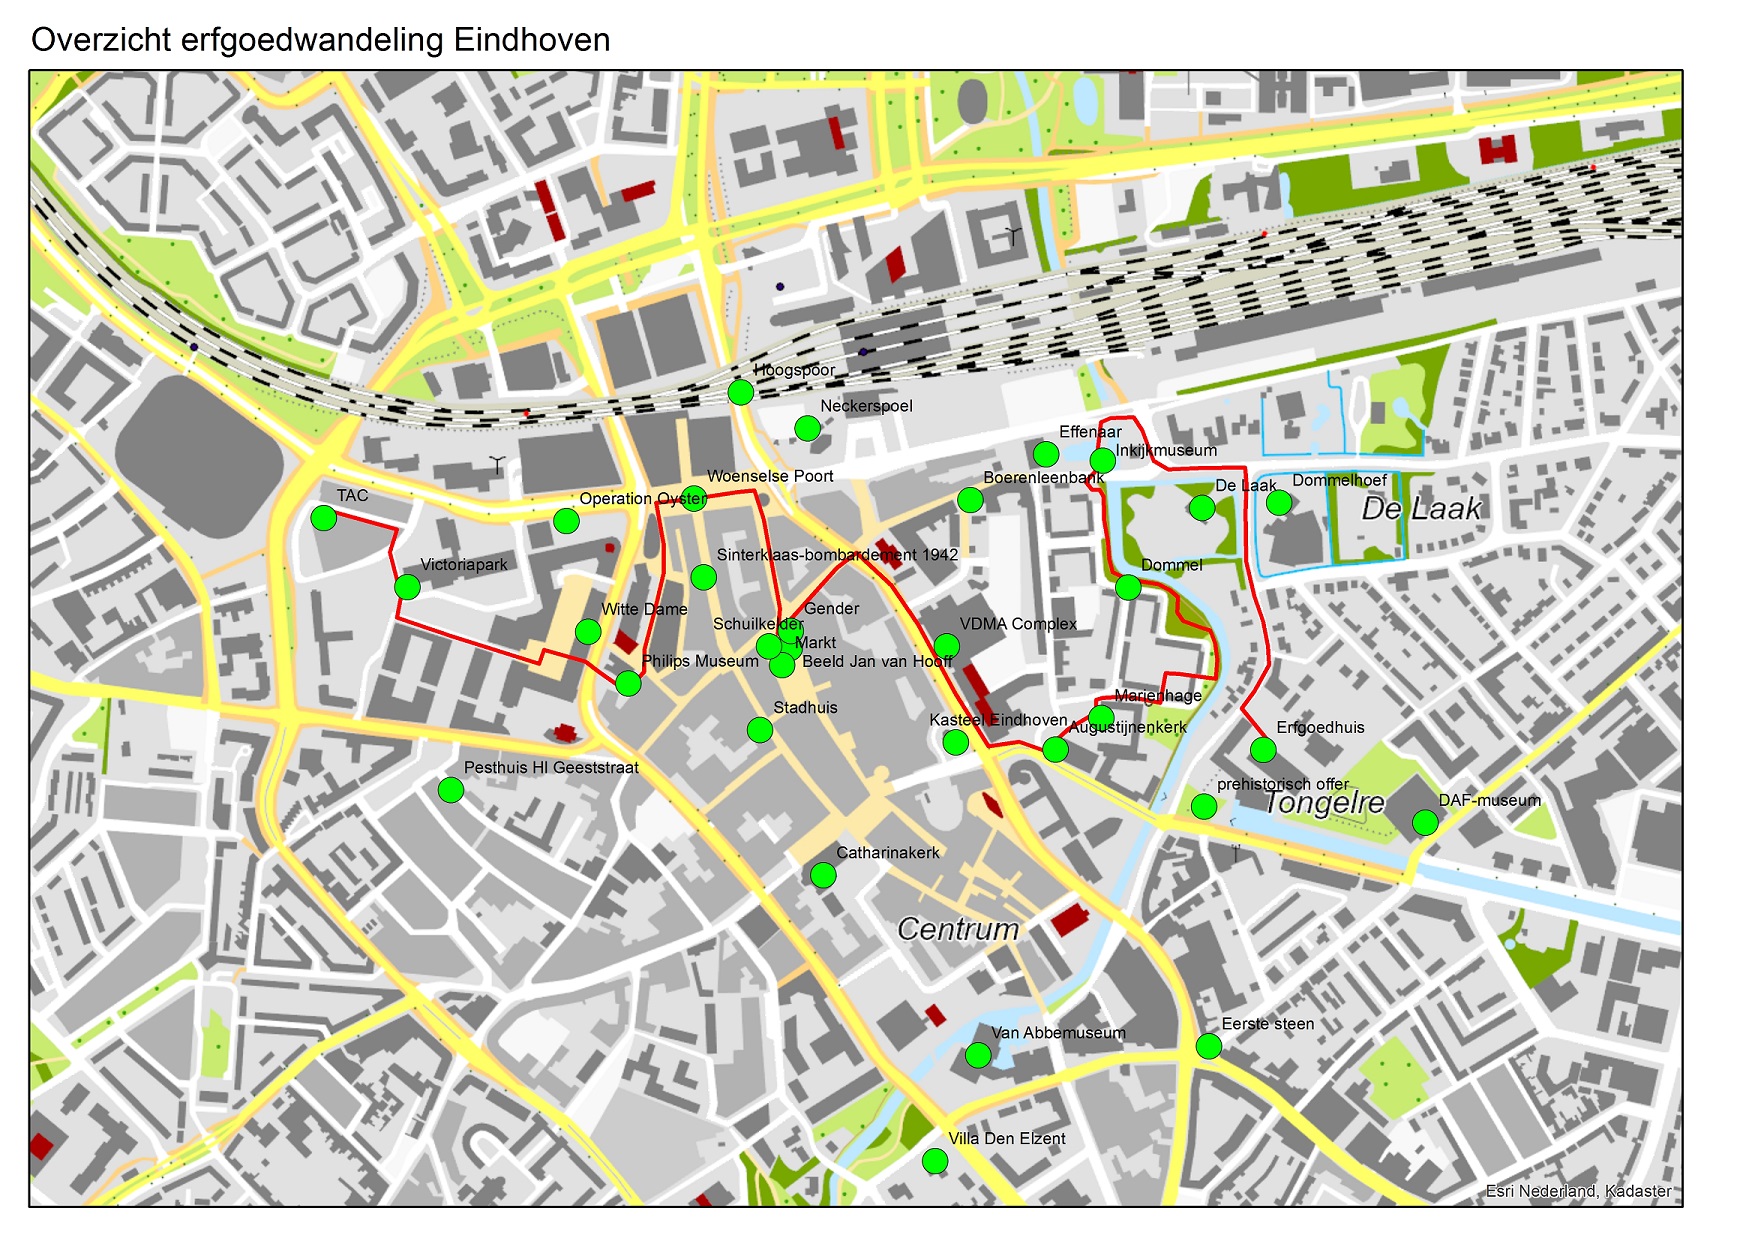 Kaart erfgoedwandeling Eindhoven.jpg